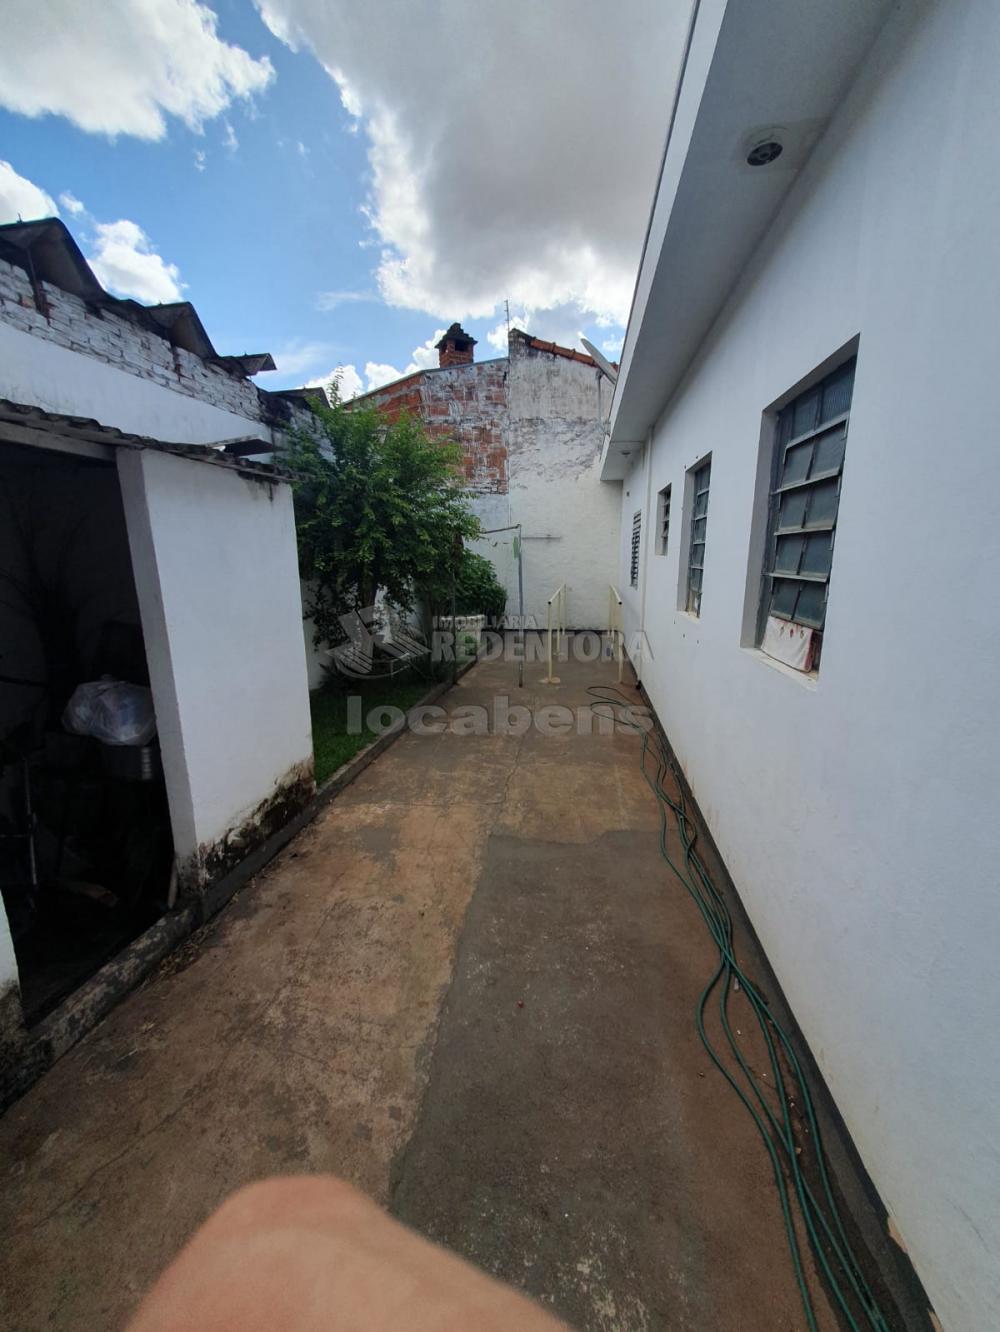 Comprar Casa / Padrão em São José do Rio Preto apenas R$ 320.000,00 - Foto 19